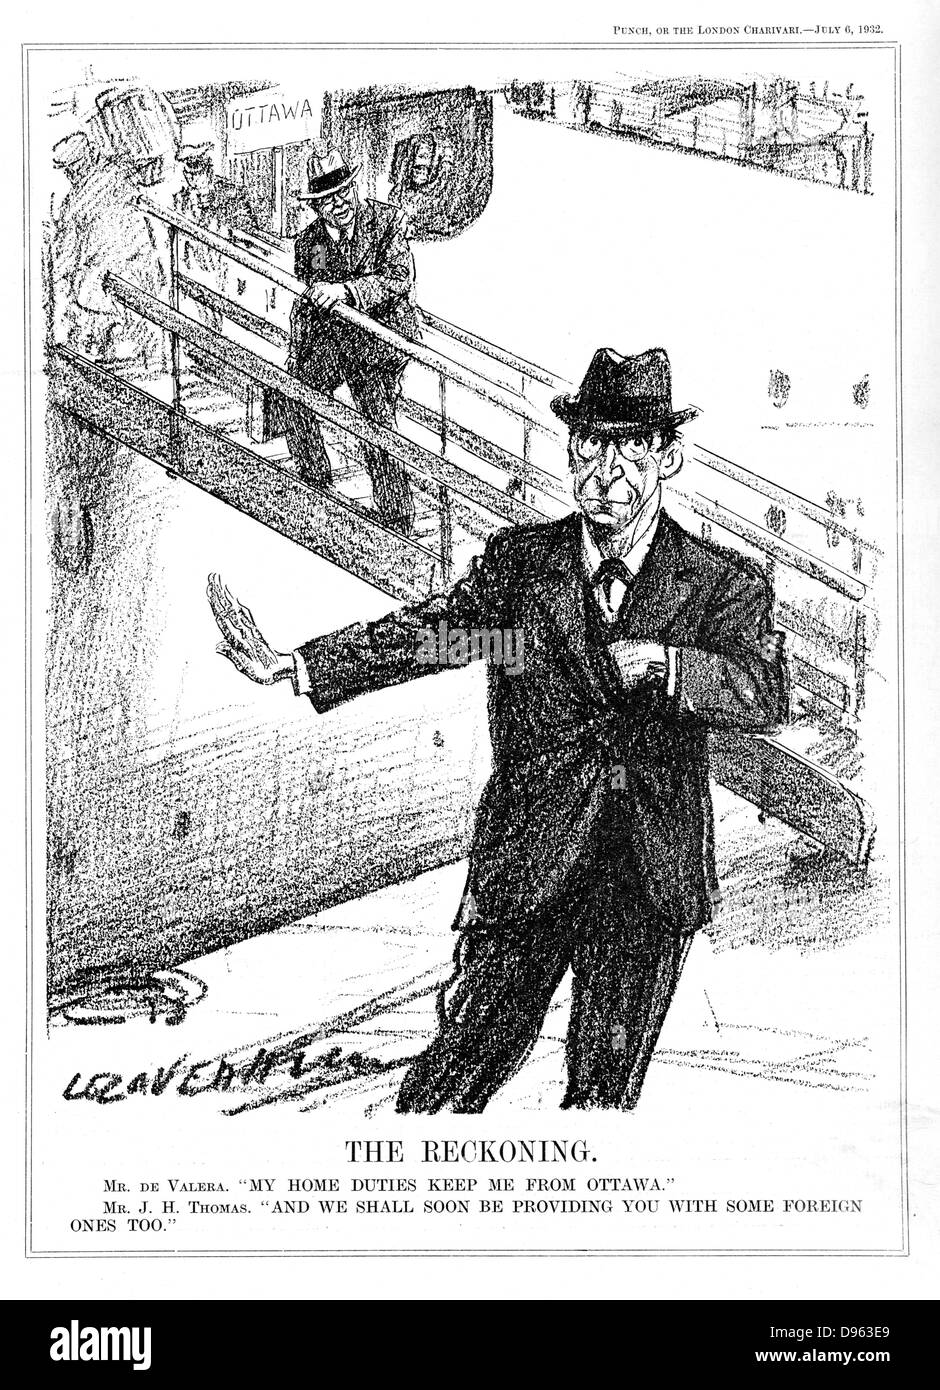 Eamon De Valera (1882-1975) americano-Nato statista irlandese, diminuendo la possibilità di partecipare alla Conferenza di Ottawa sul tarriffs perché oh i suoi compiti a casa in Stato Libero Irlandese, dove aveva appena entrerà in potenza,. Cartone animato da L Ravenhill da "punzone" (Londra, 6 luglio 1932). Foto Stock